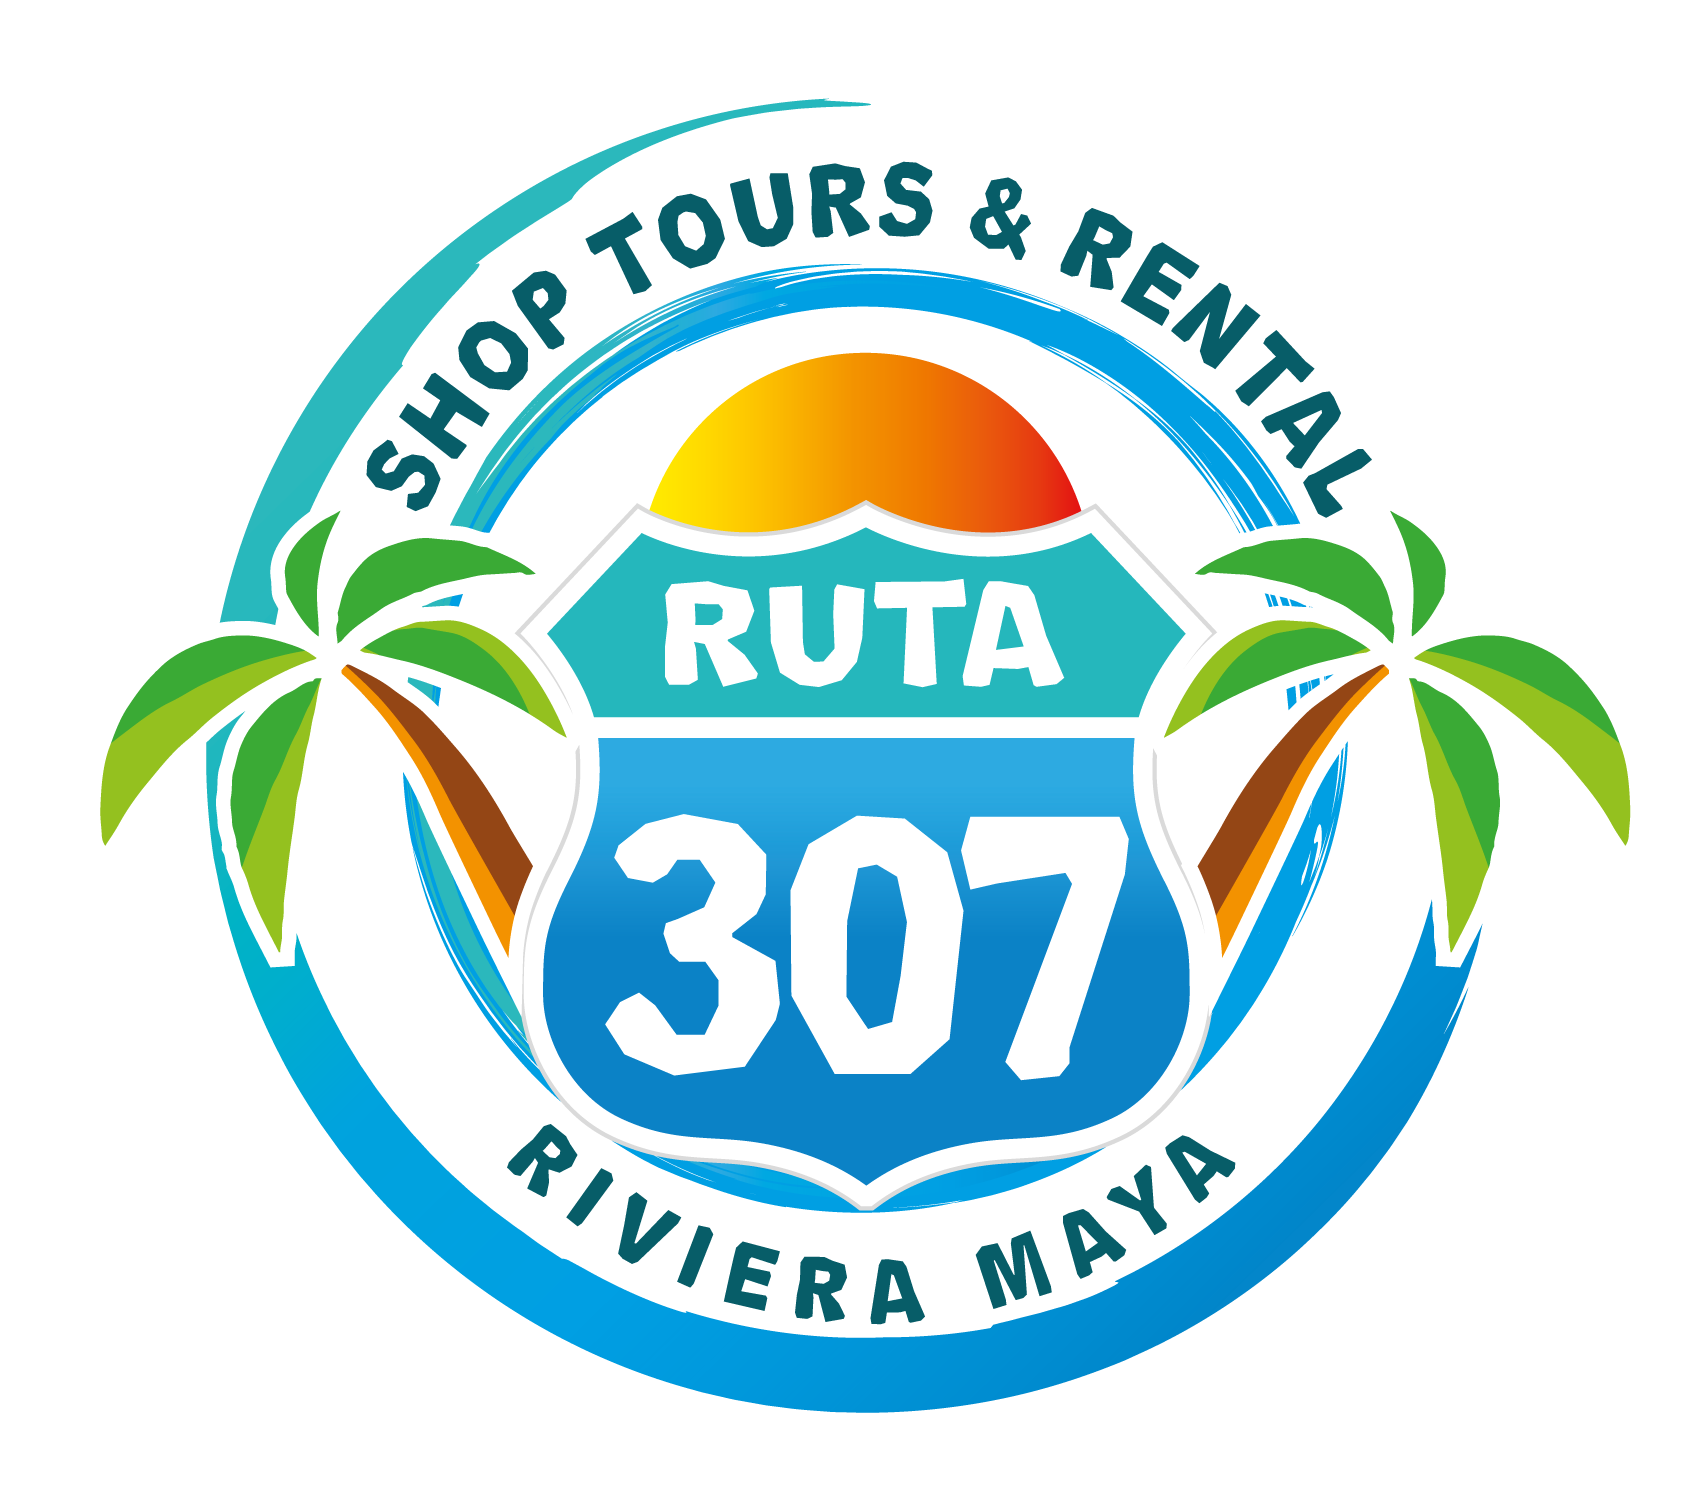 Ruta307